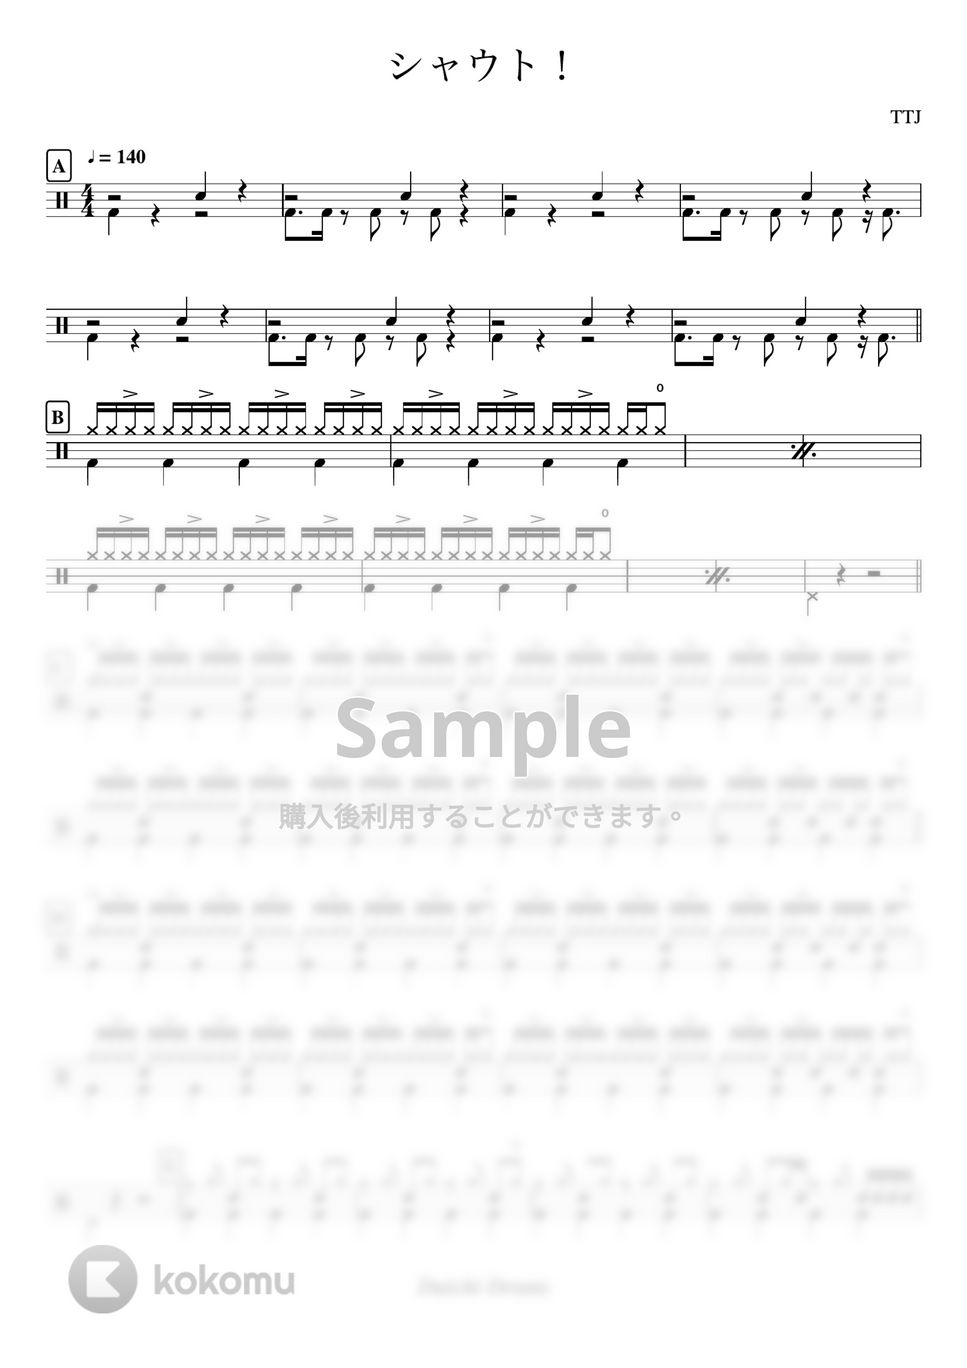 TTJ - シャウト！ by Daichi Drums